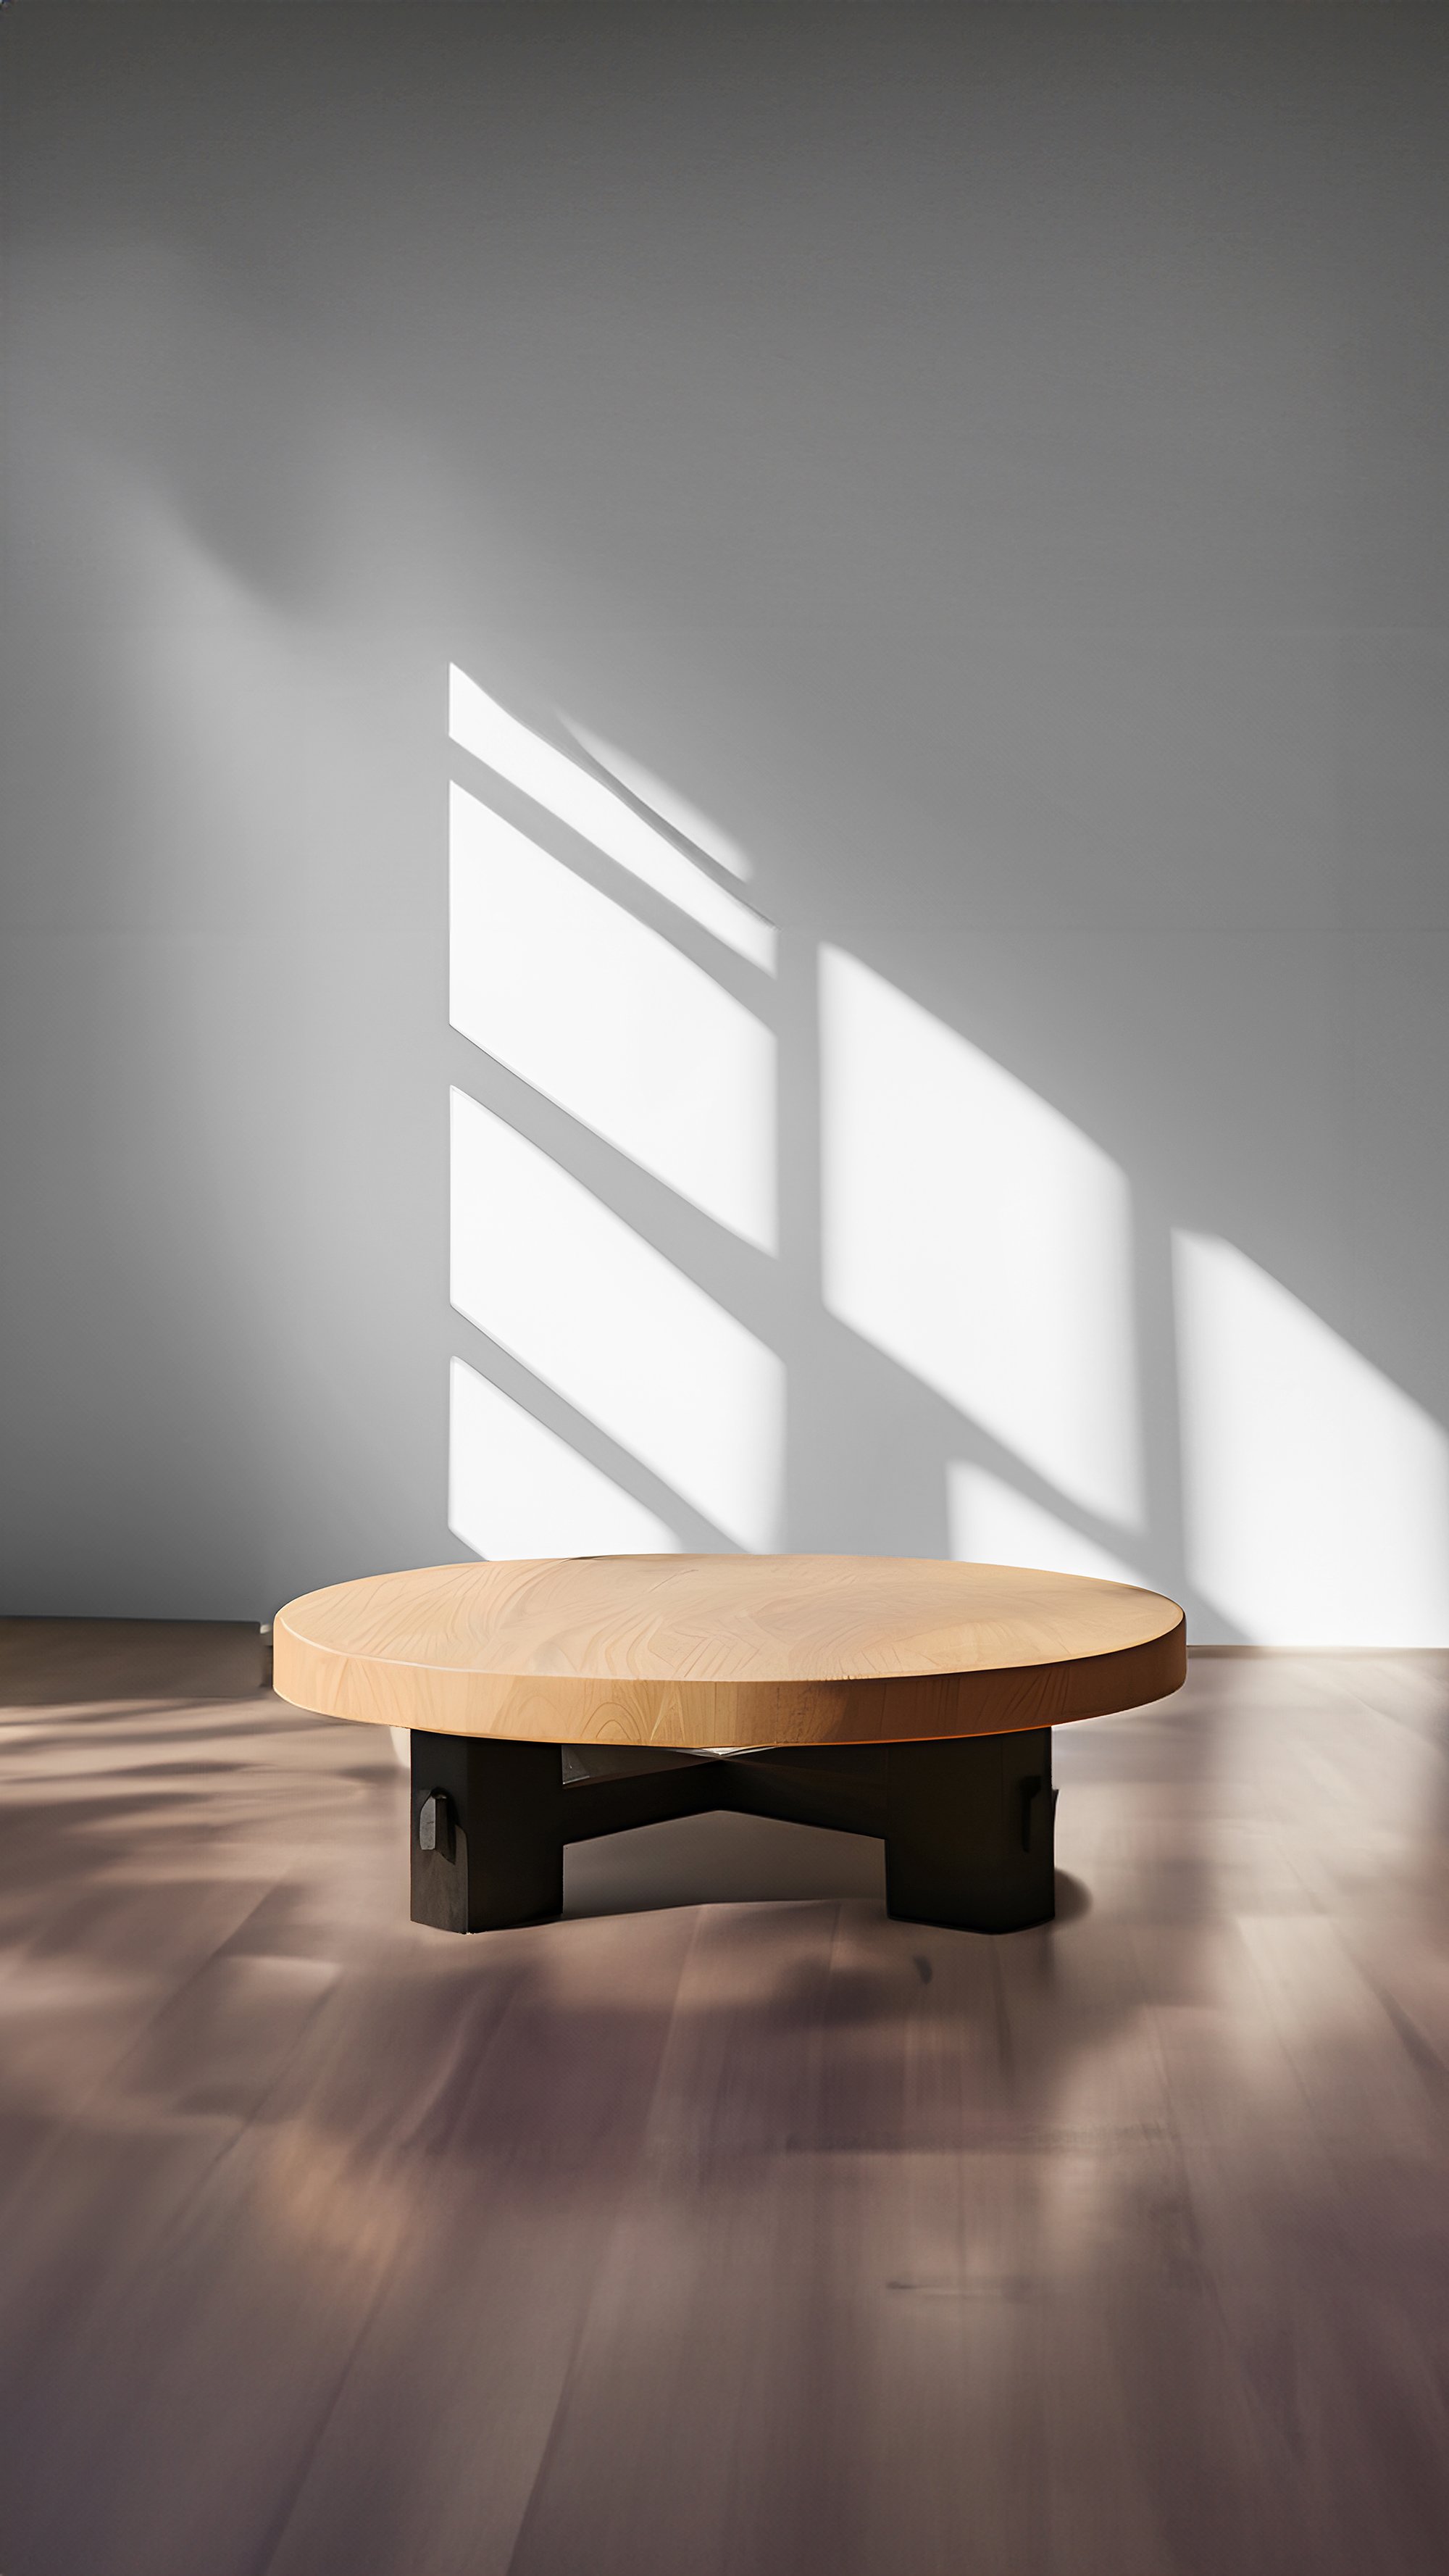 Low-profile Round Oak Table - Serene Fundamenta 36 by NONO — 5.jpg